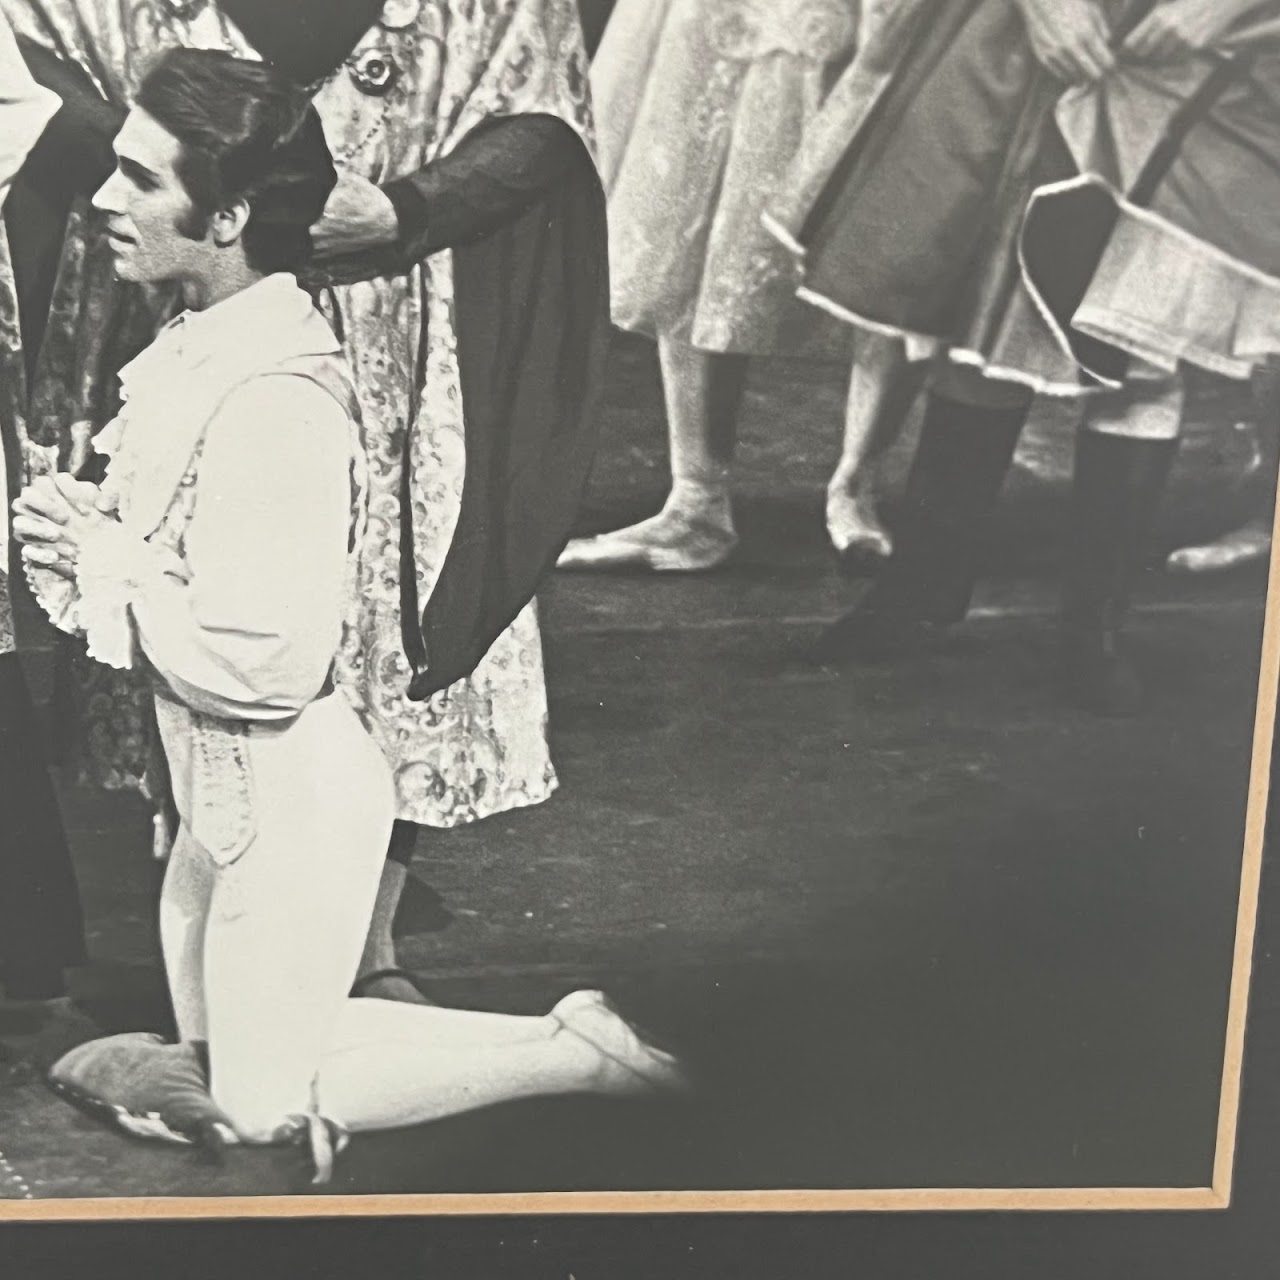 1960s Modern Ballet Performance Photograph Diptych